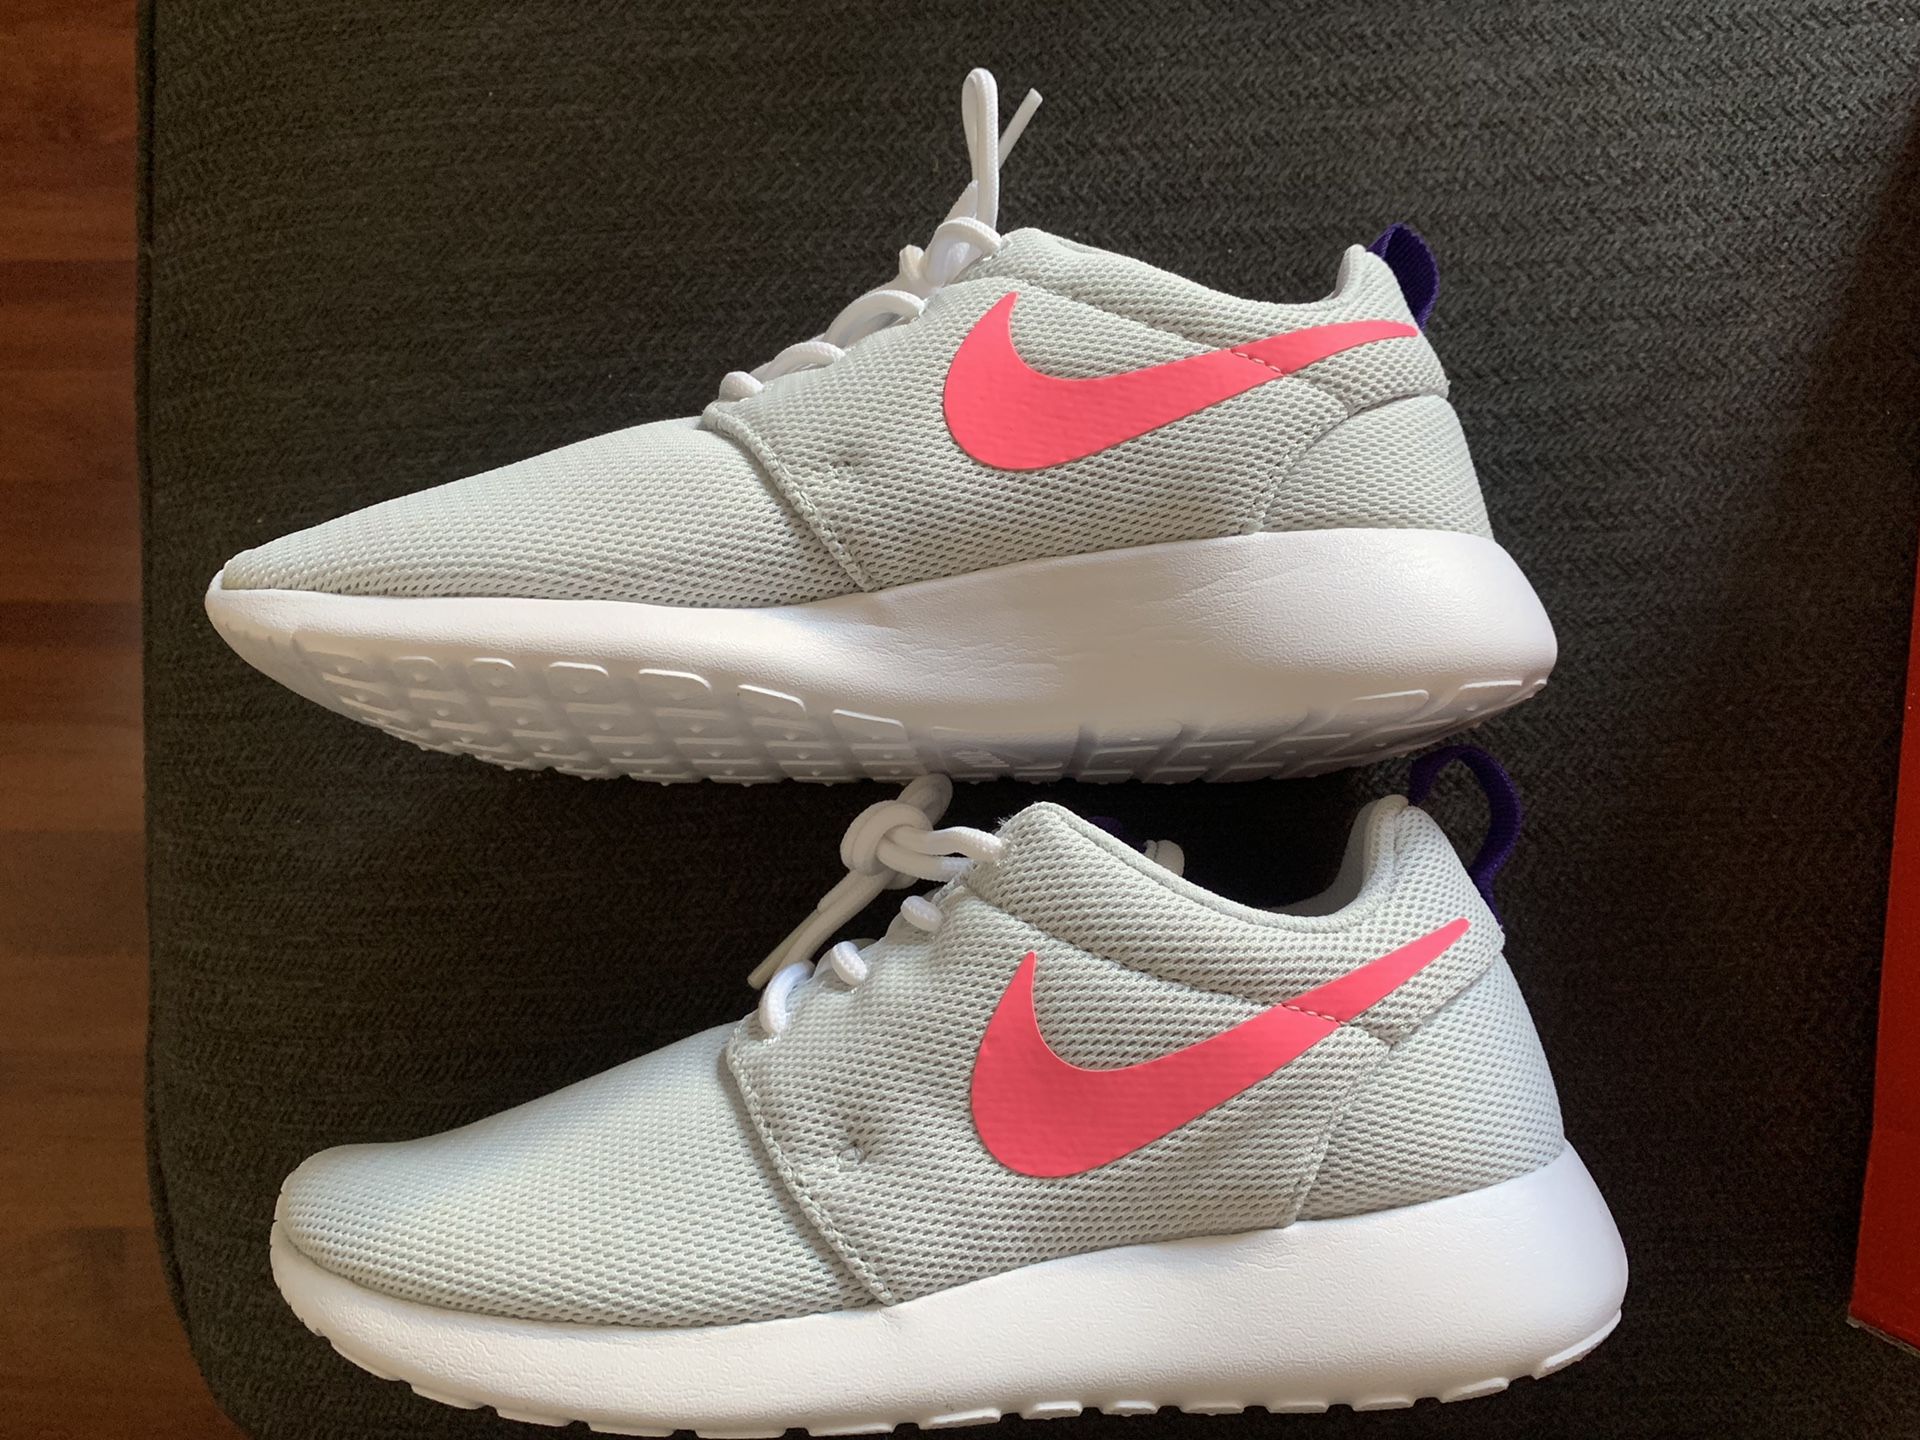 Nike Women’s Running Shoes - 5.5 - Platinum/Laser Pink